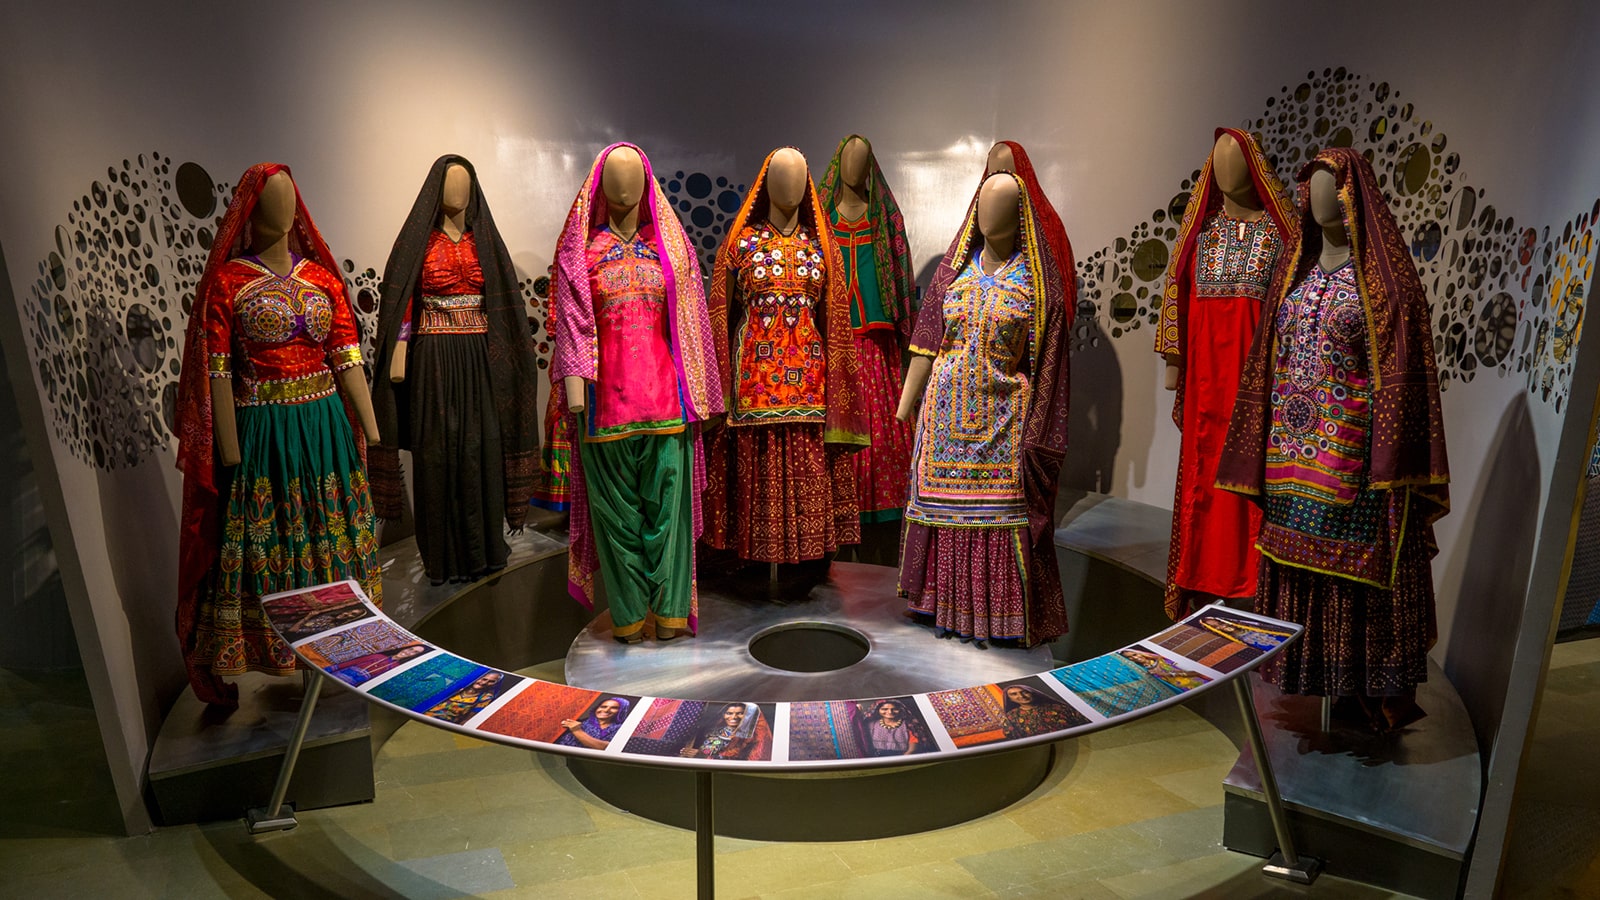 "Bhuj textile museum matrika design collaborative indiaartndesign"